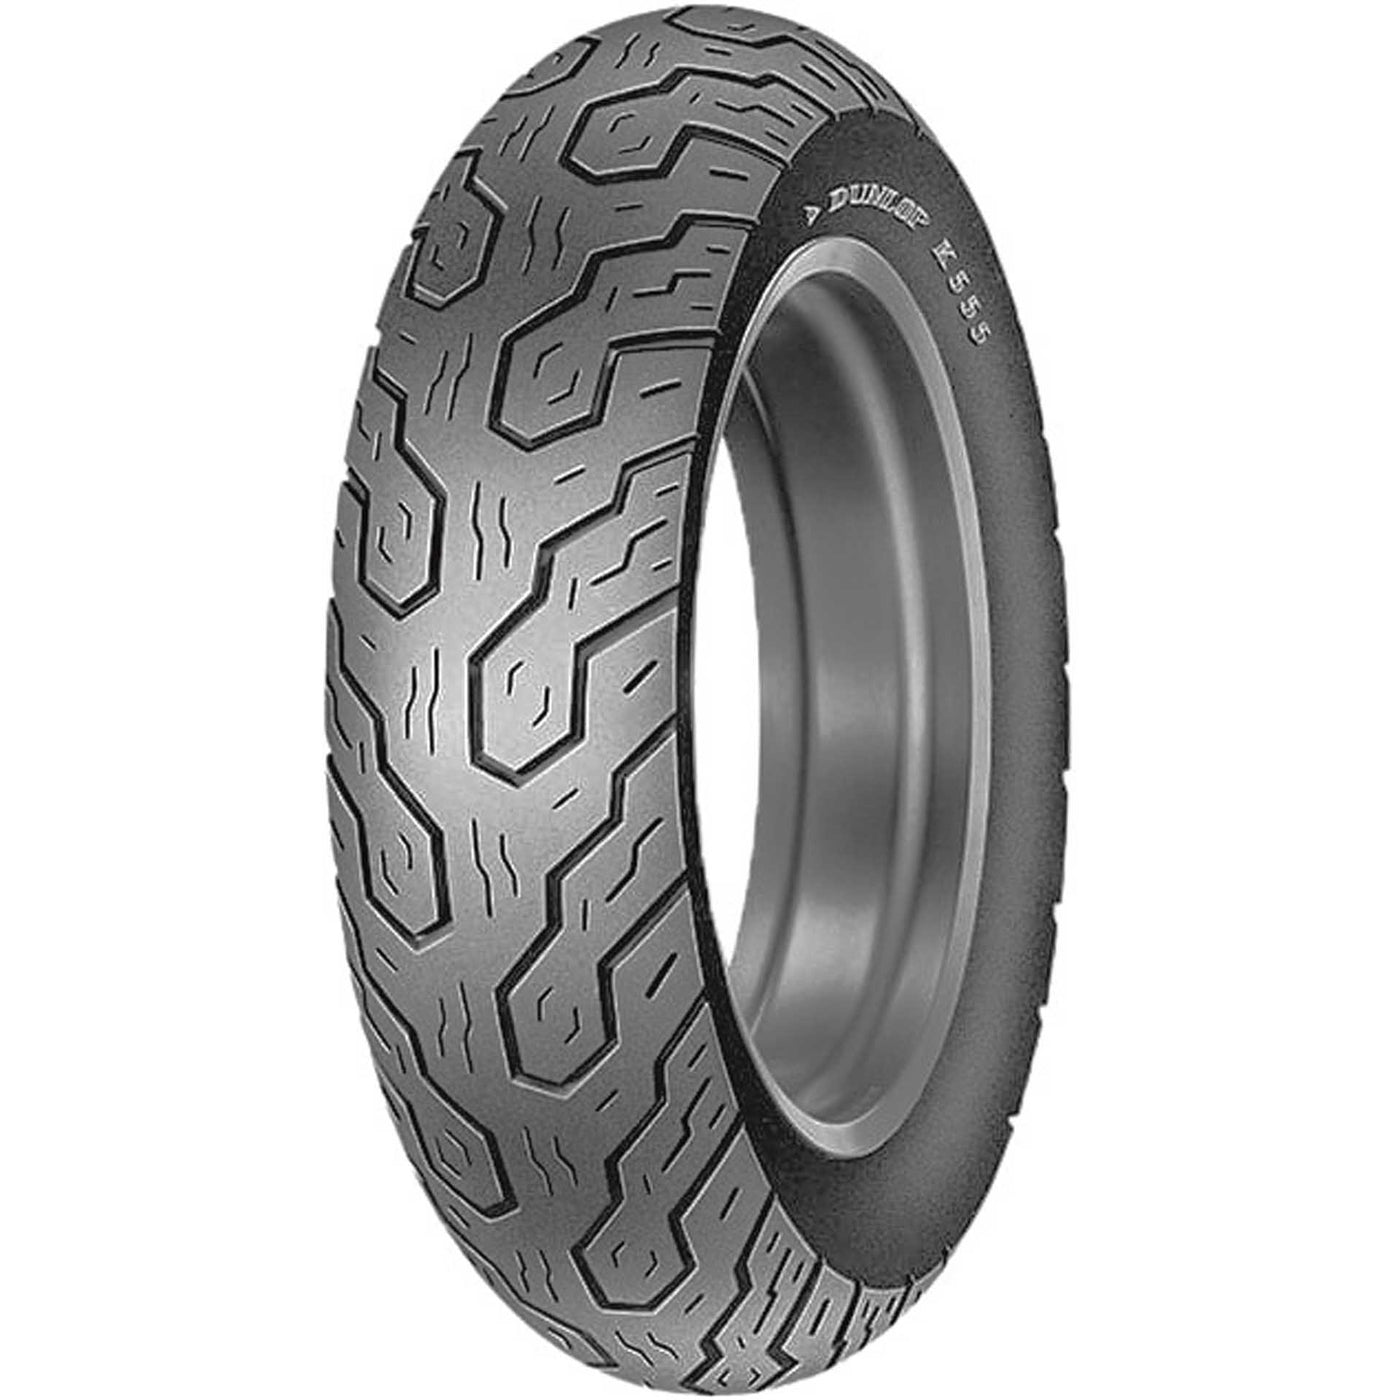 Dunlop K555 Tire